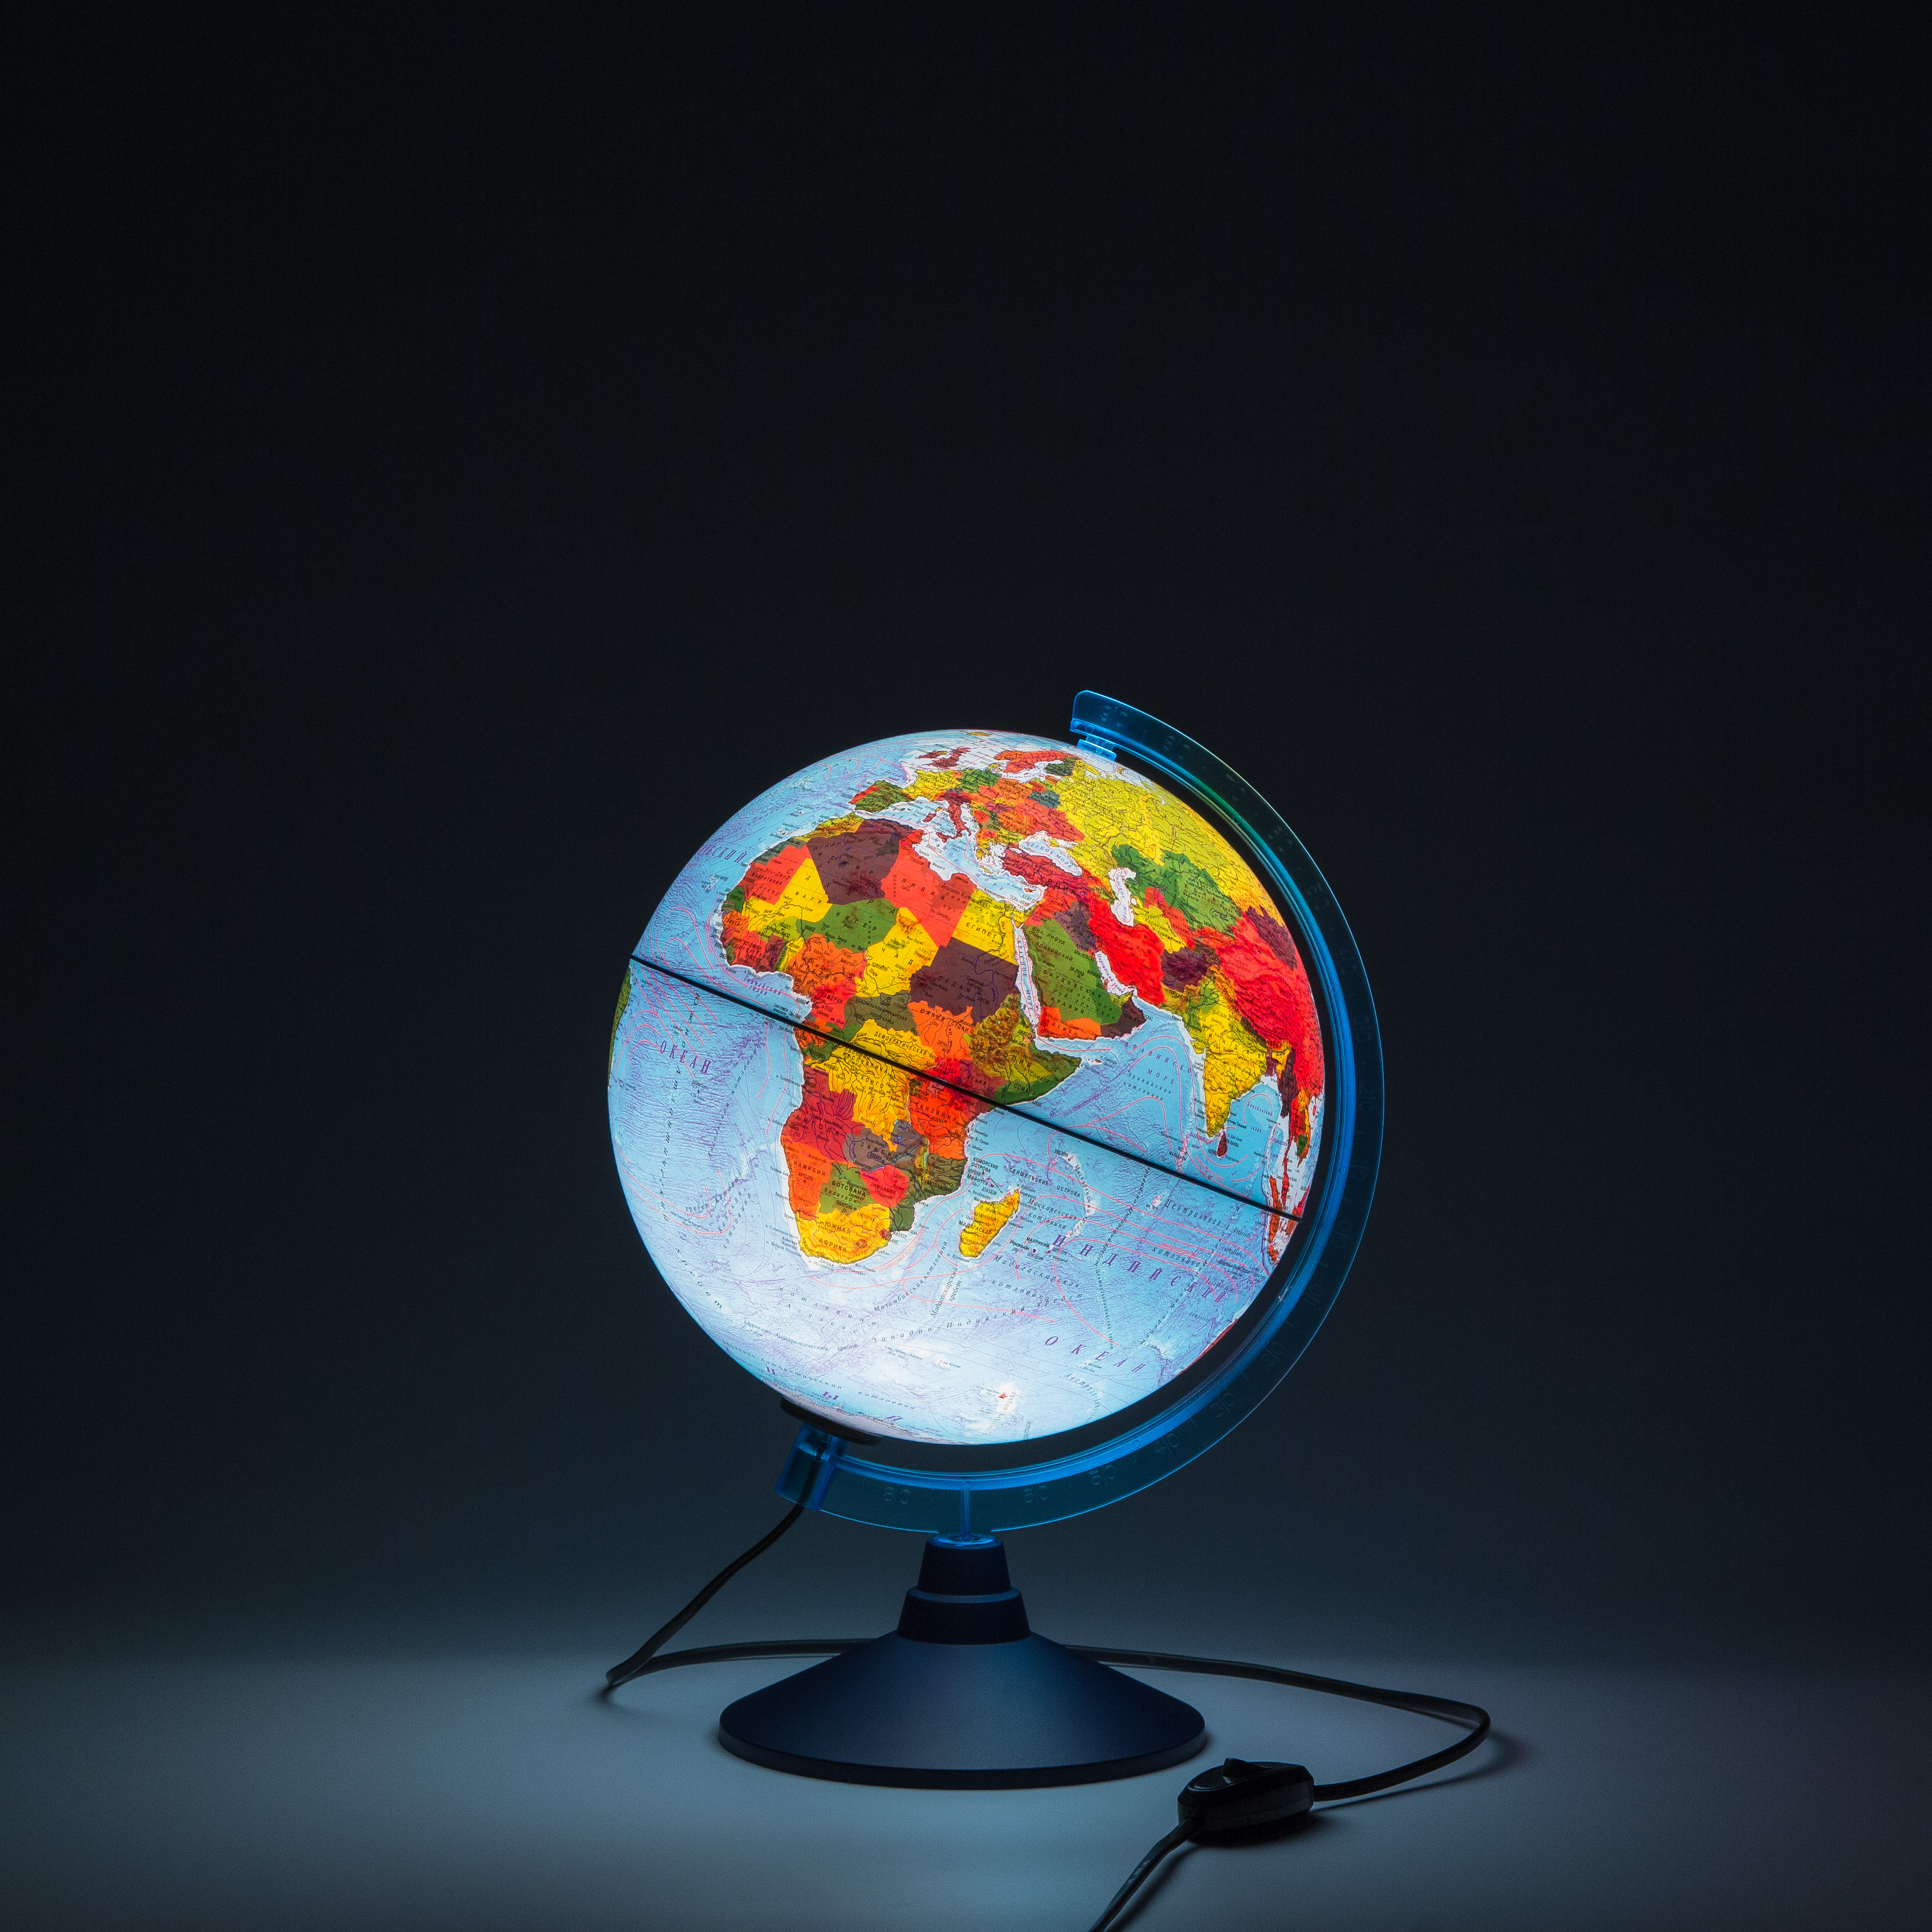 Глобусы Интерактивный глобус Земли D-25см физико-политический с  подсветкой.Очки виртуальной реальности (VR) в комплекте